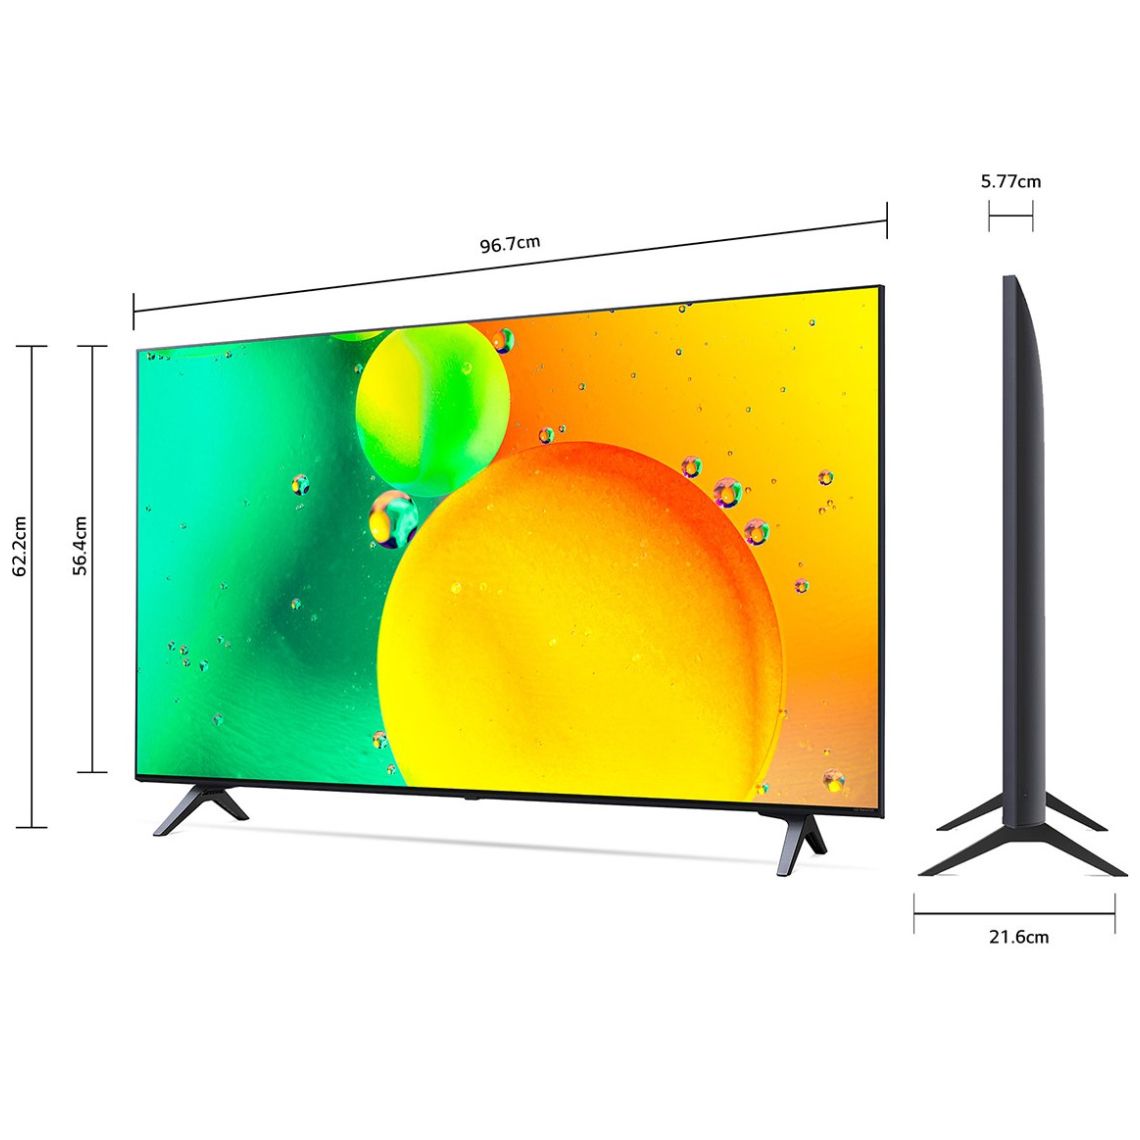 TV LG 43 Pulgadas 110 cm 43NANO77SRA 4K-UHD NanoCell Smar